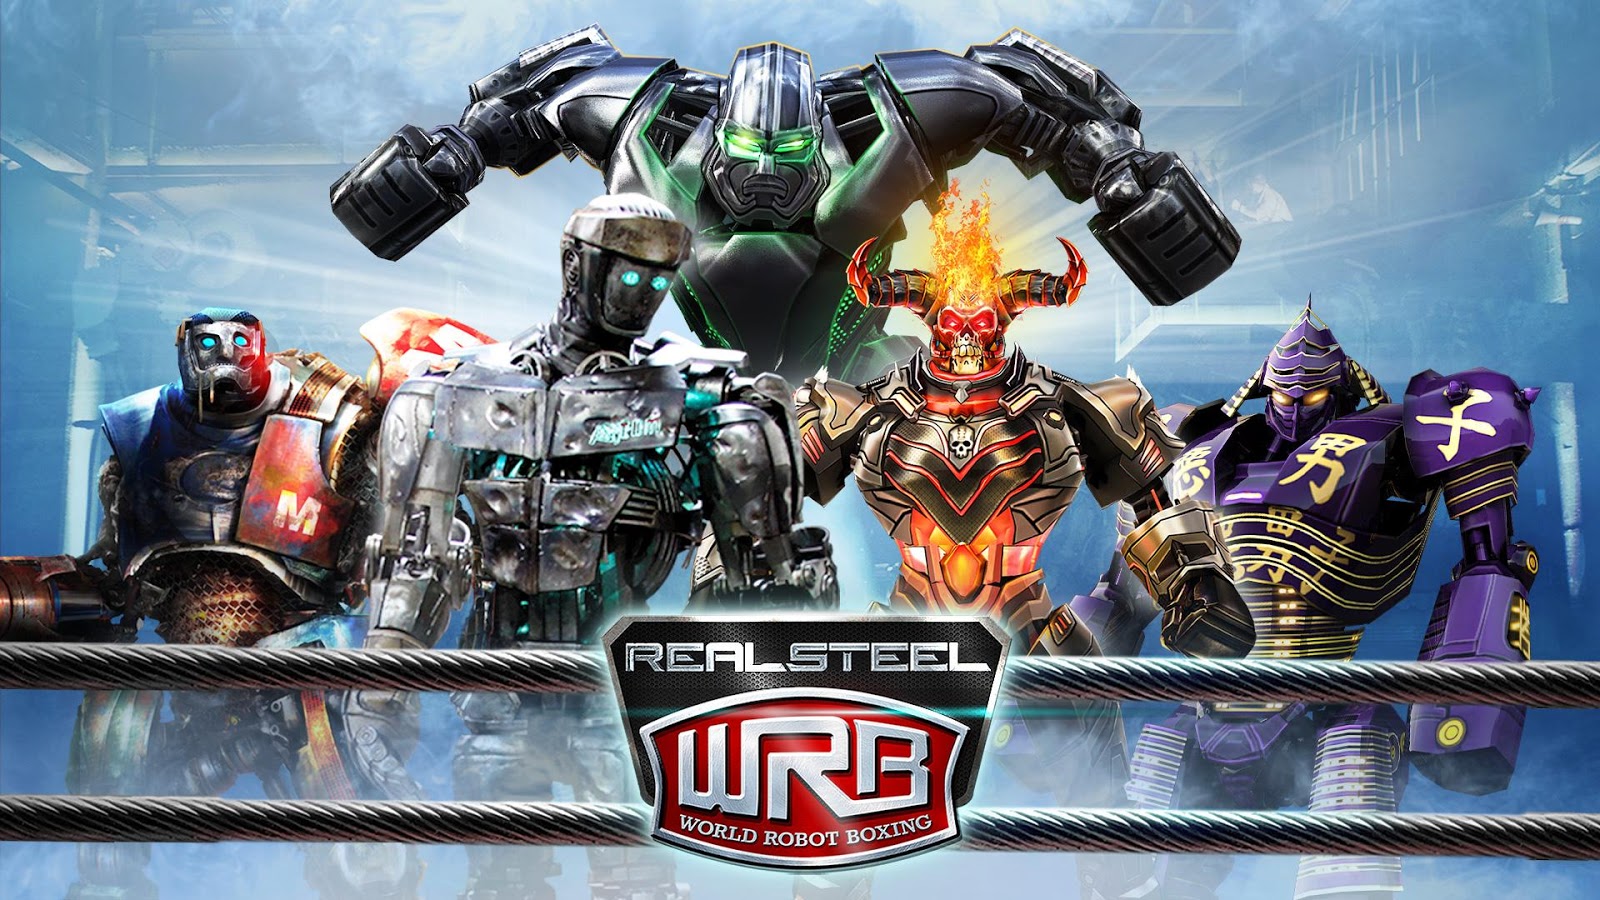 Игры робот стали. WRB роботы. Живая сталь роботы. Игра Реал стил робот боксинг 3. Живая сталь (2011).